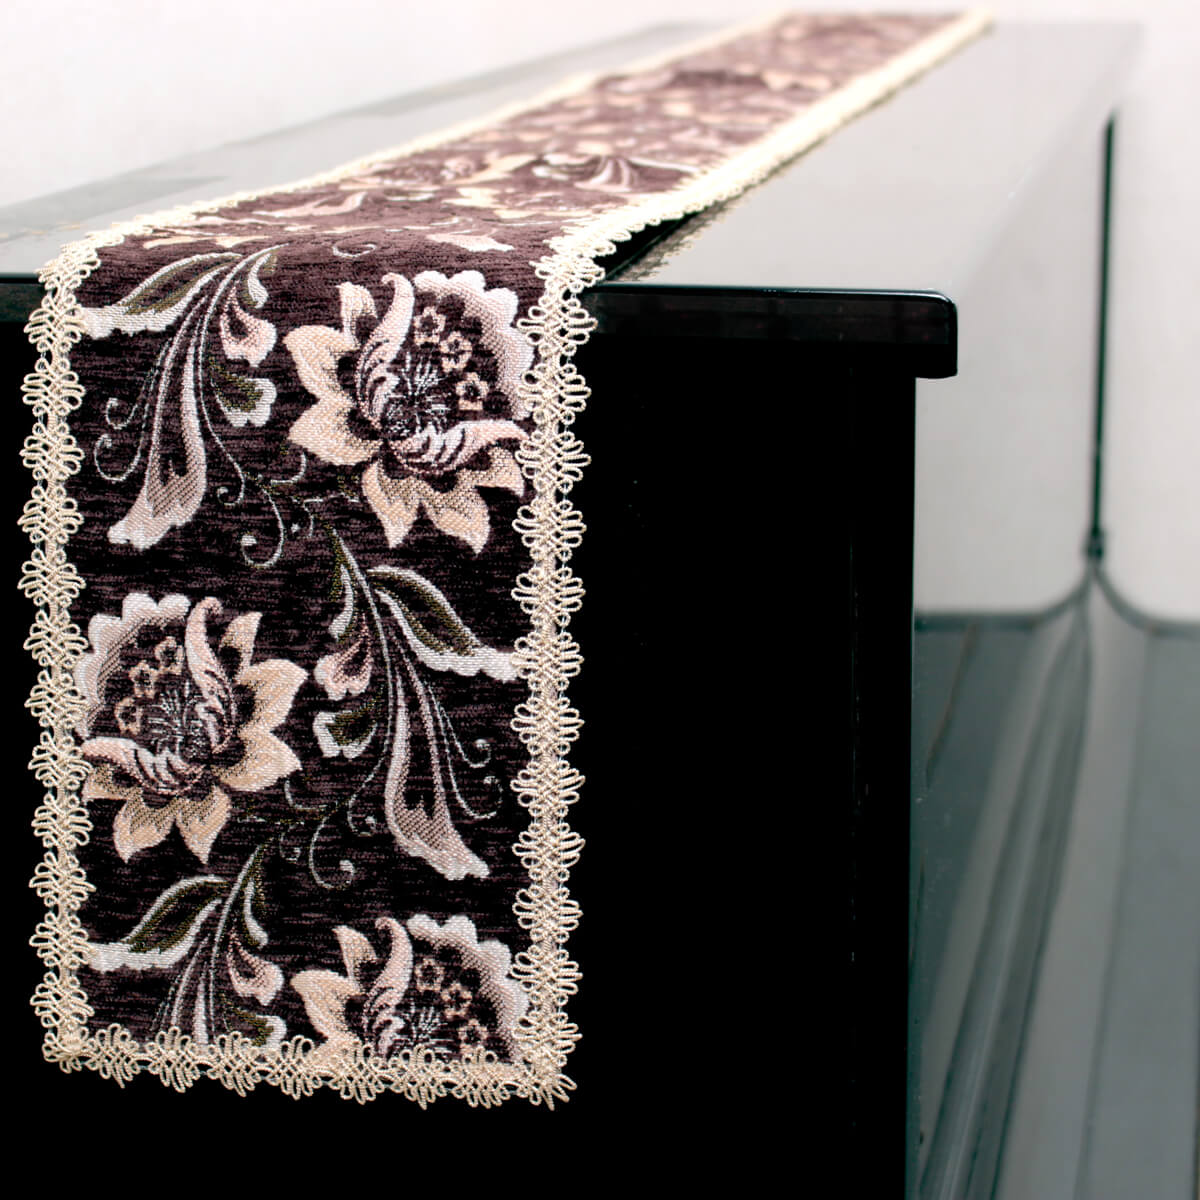 シェニール織のテーブルランナー（約16×200cm）をピアノの天板に。